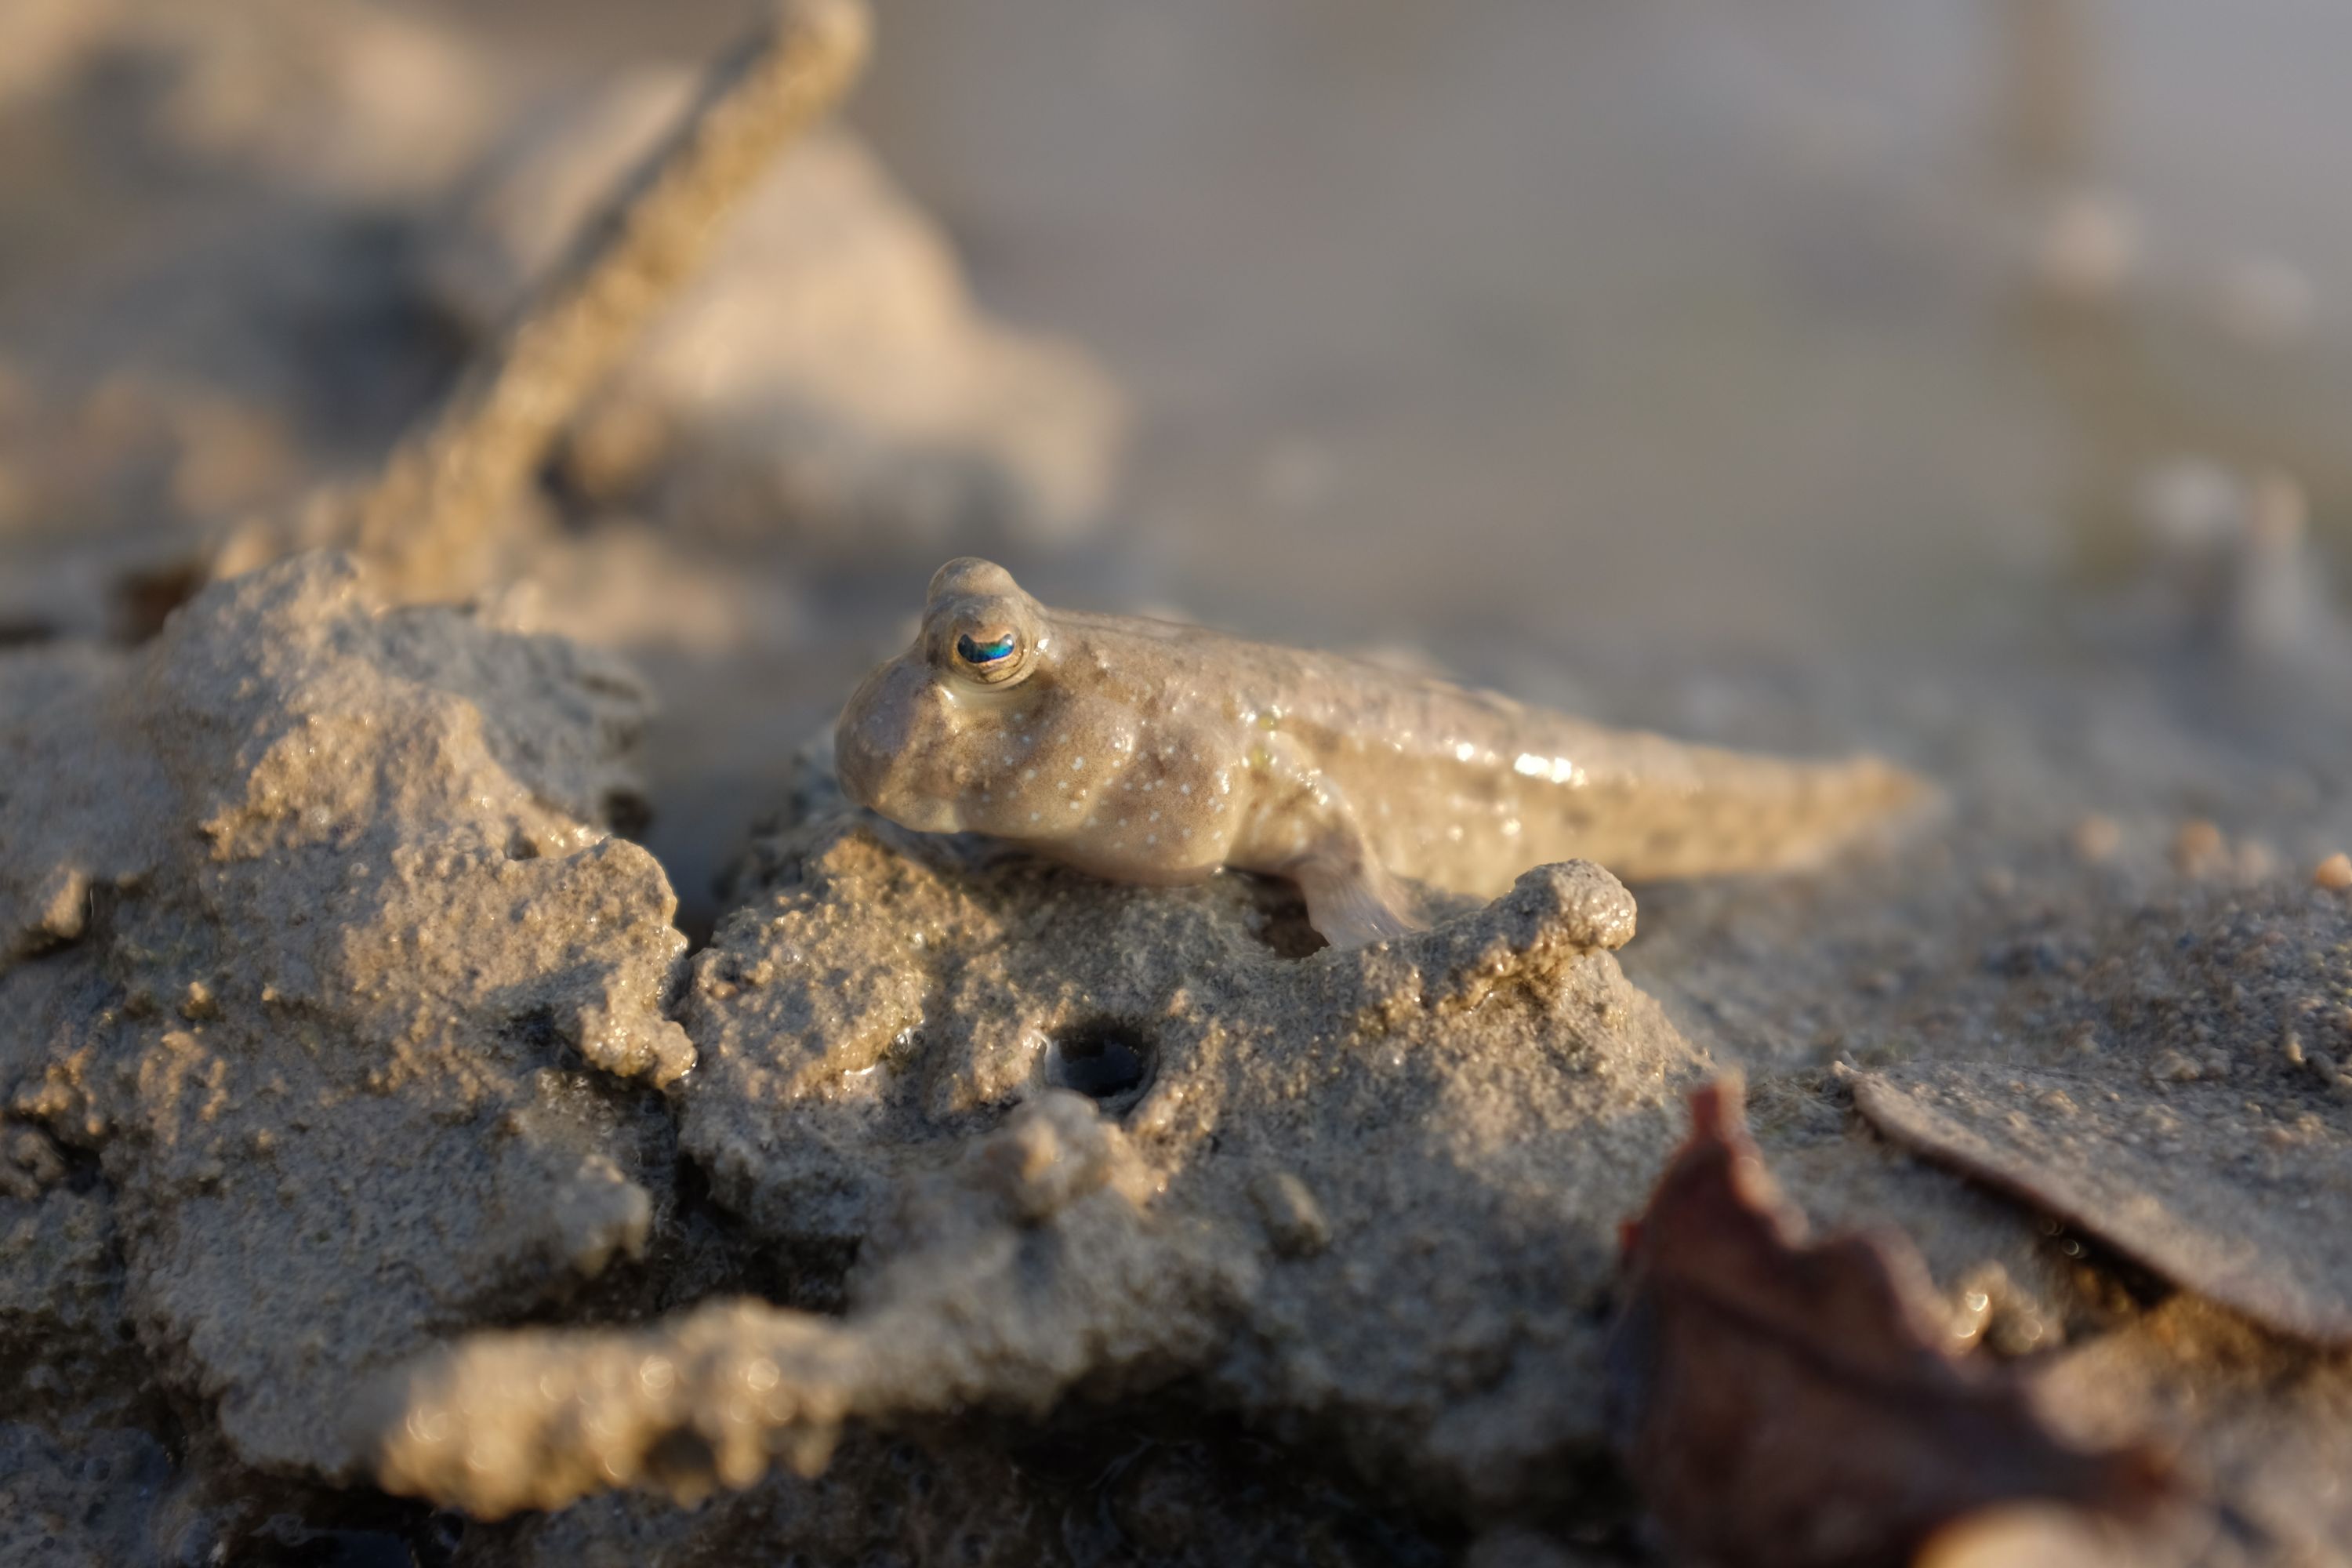 Closeup of a mudskipper in the mud.